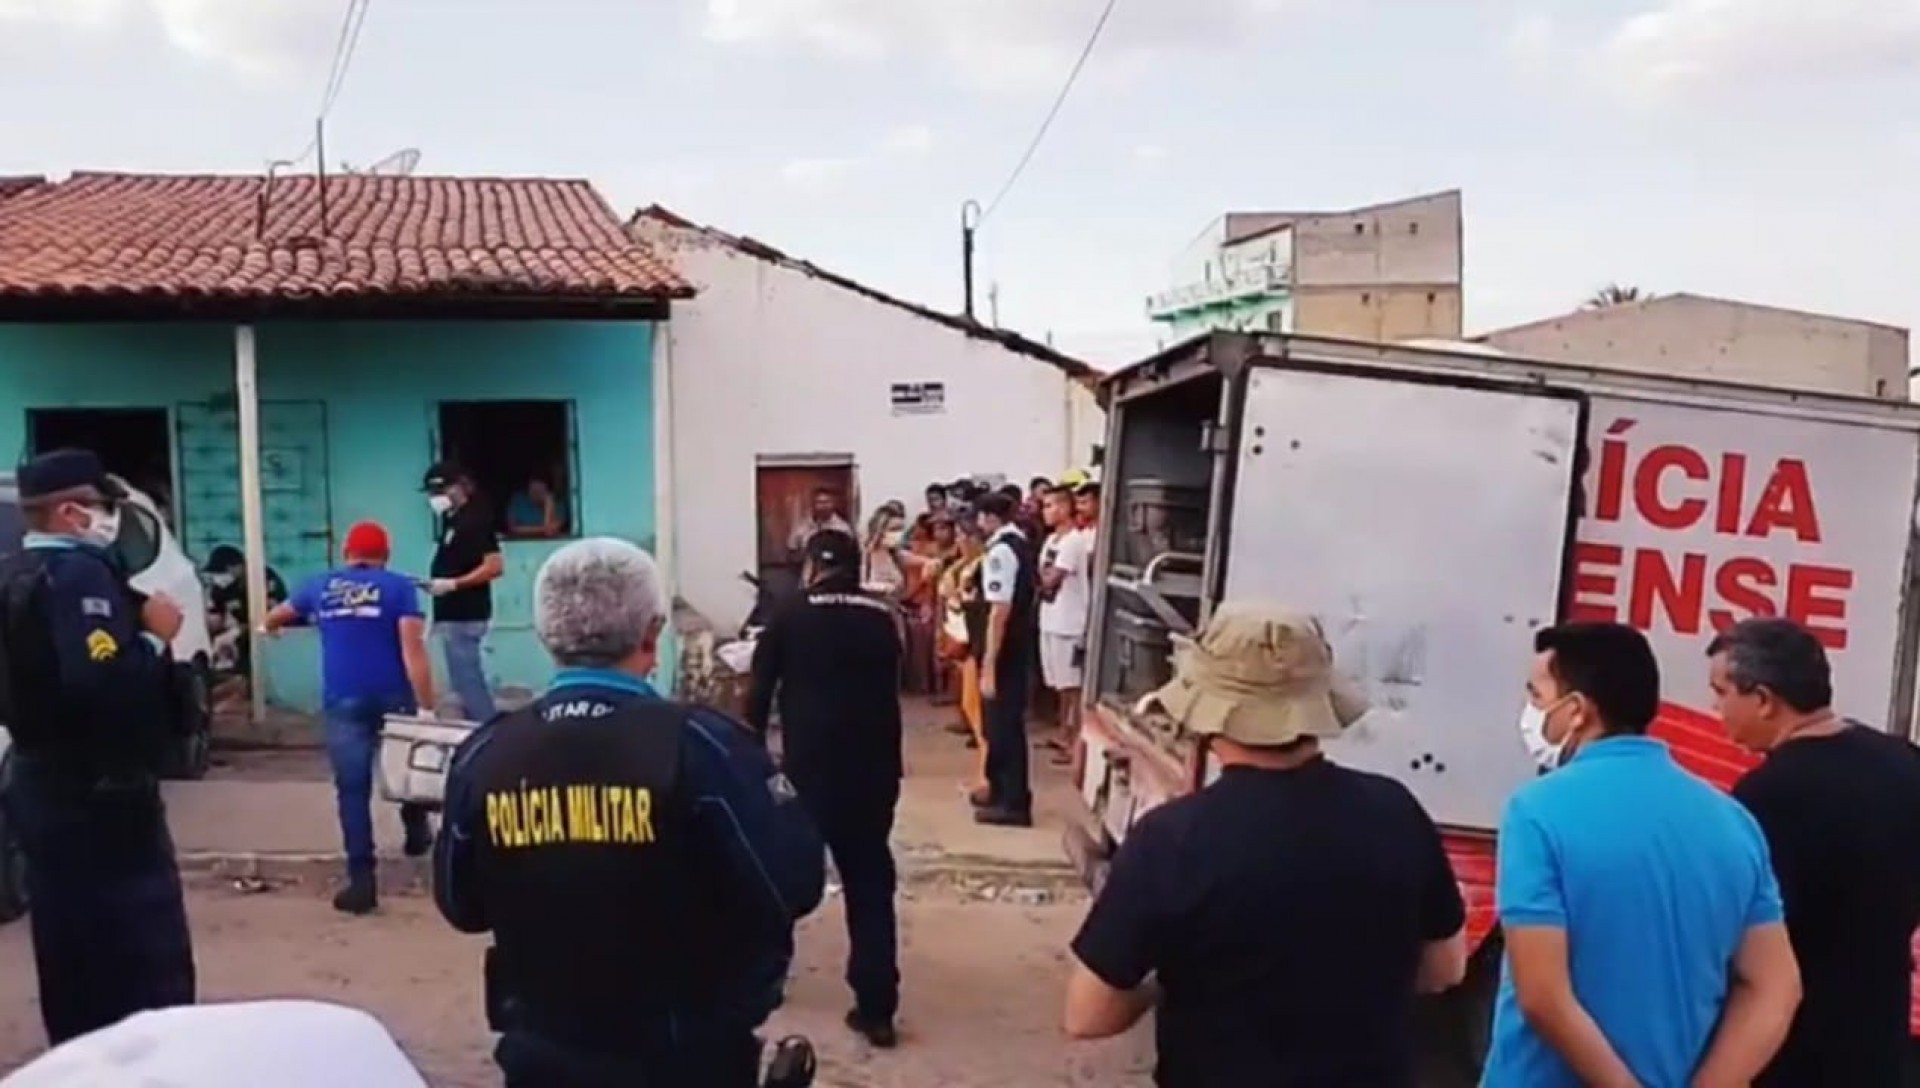 Chacina de Quiterianópolis deixou cinco mortos em outubro de 2020 (Foto: Via WhatsApp O POVO)